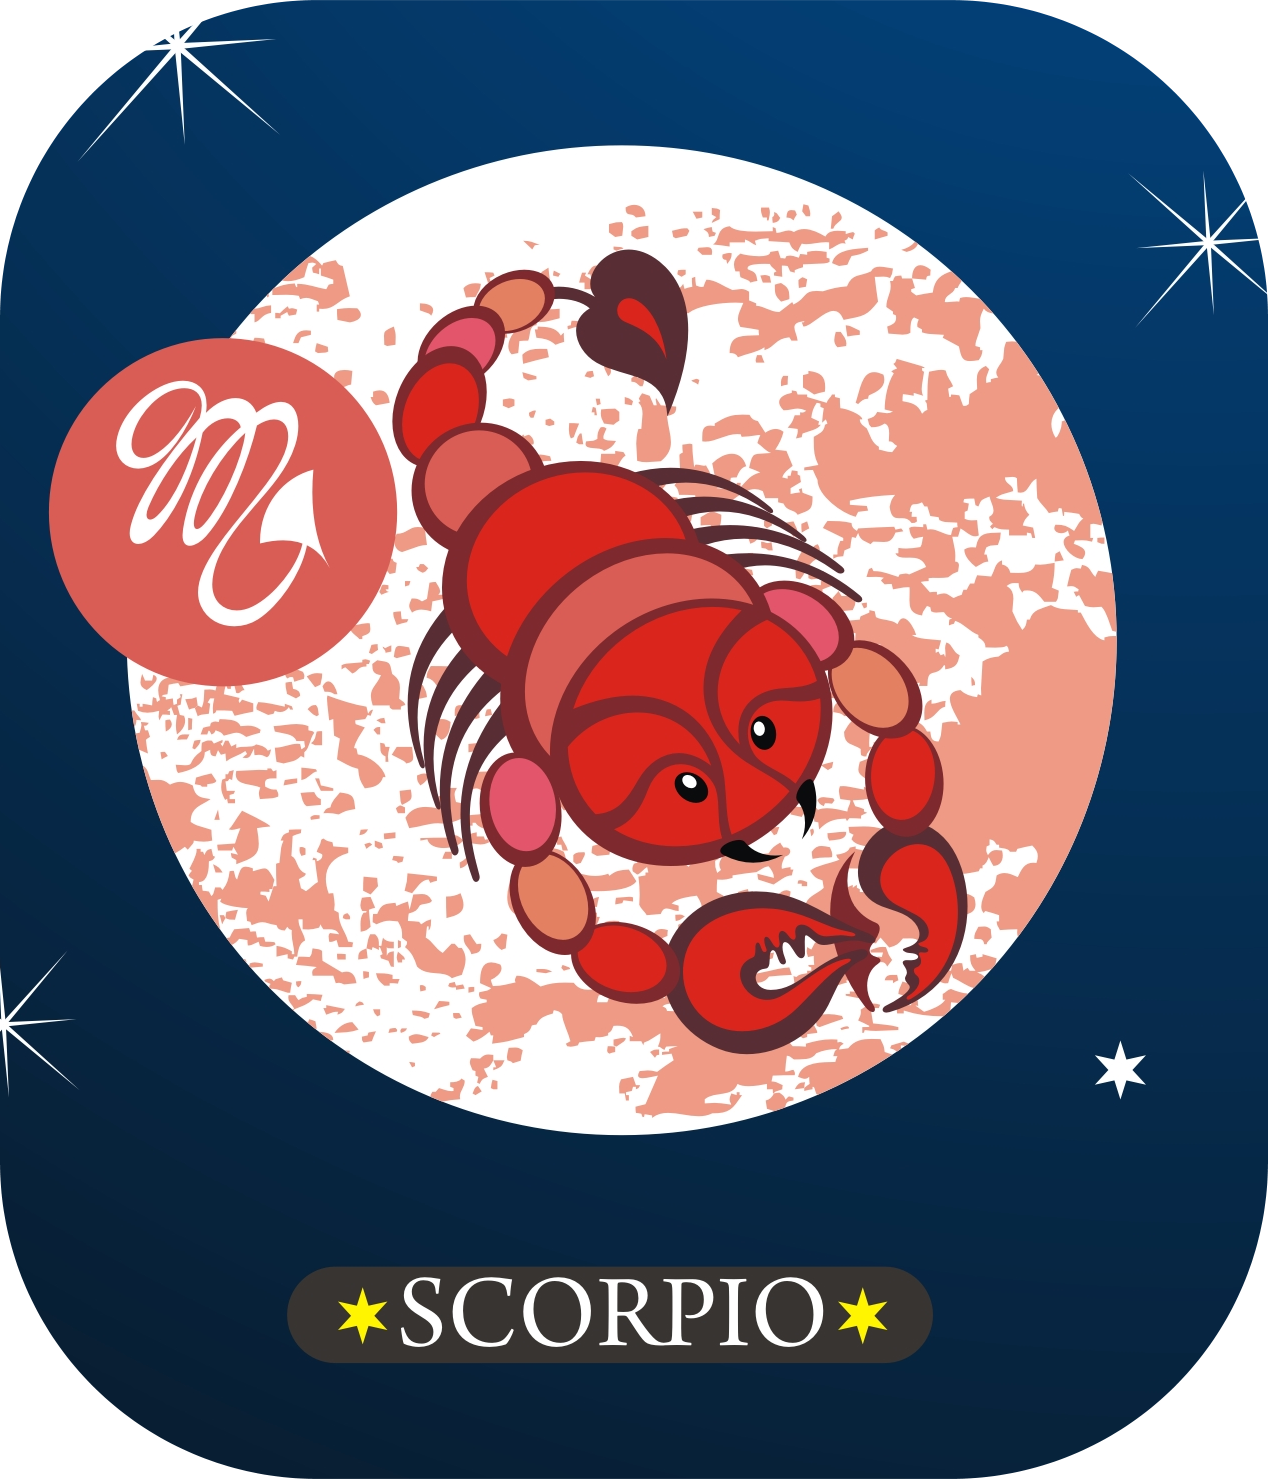 zodiac sign scorpio